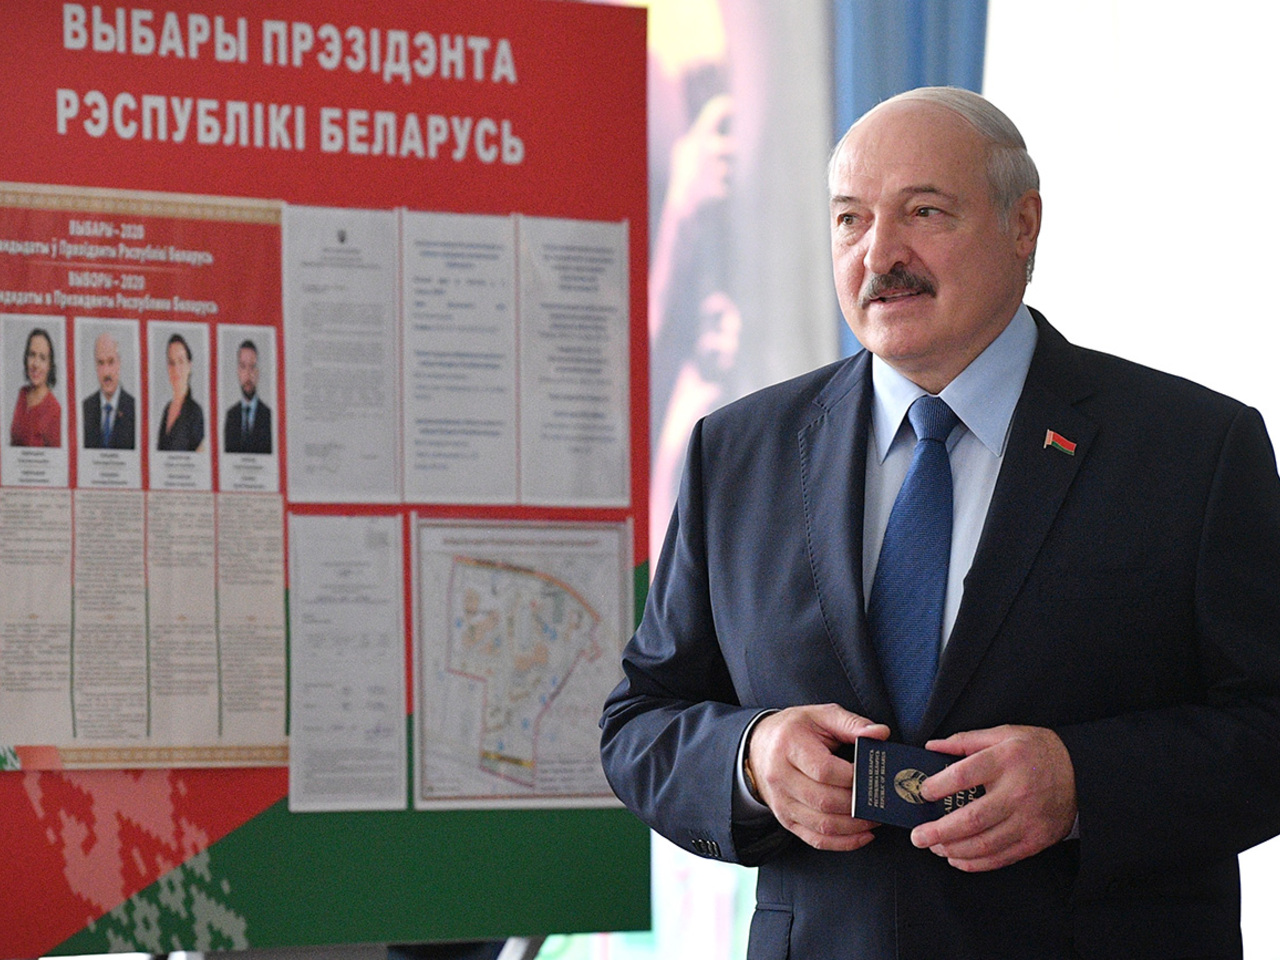 Шулипа: У Лукашенко нет никого иного исхода, как после потери власти быть приговоренным к смертной казни